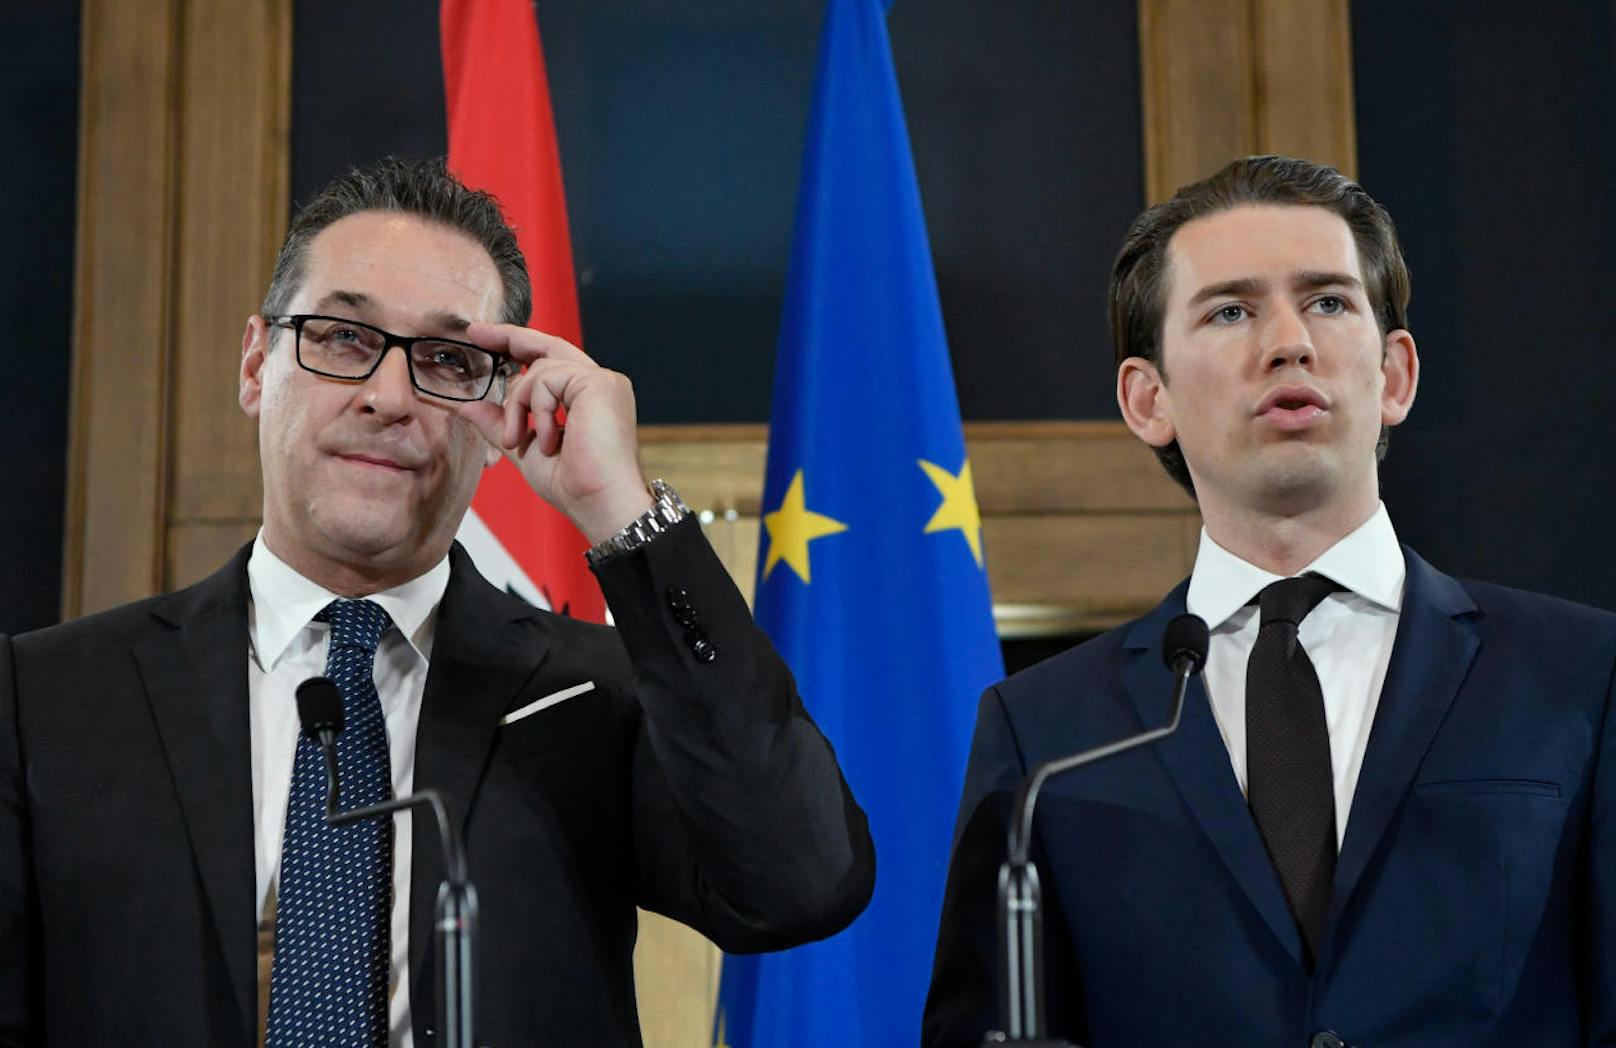 ... mit seinem <b>Vizekanzler </b>FPÖ-Chef <b>Heinz-Christian Strache</b> (l.) die dritte schwarz-blaue, respektive türkis-blaue, Regierungskoalition der Zweiten Republik an.